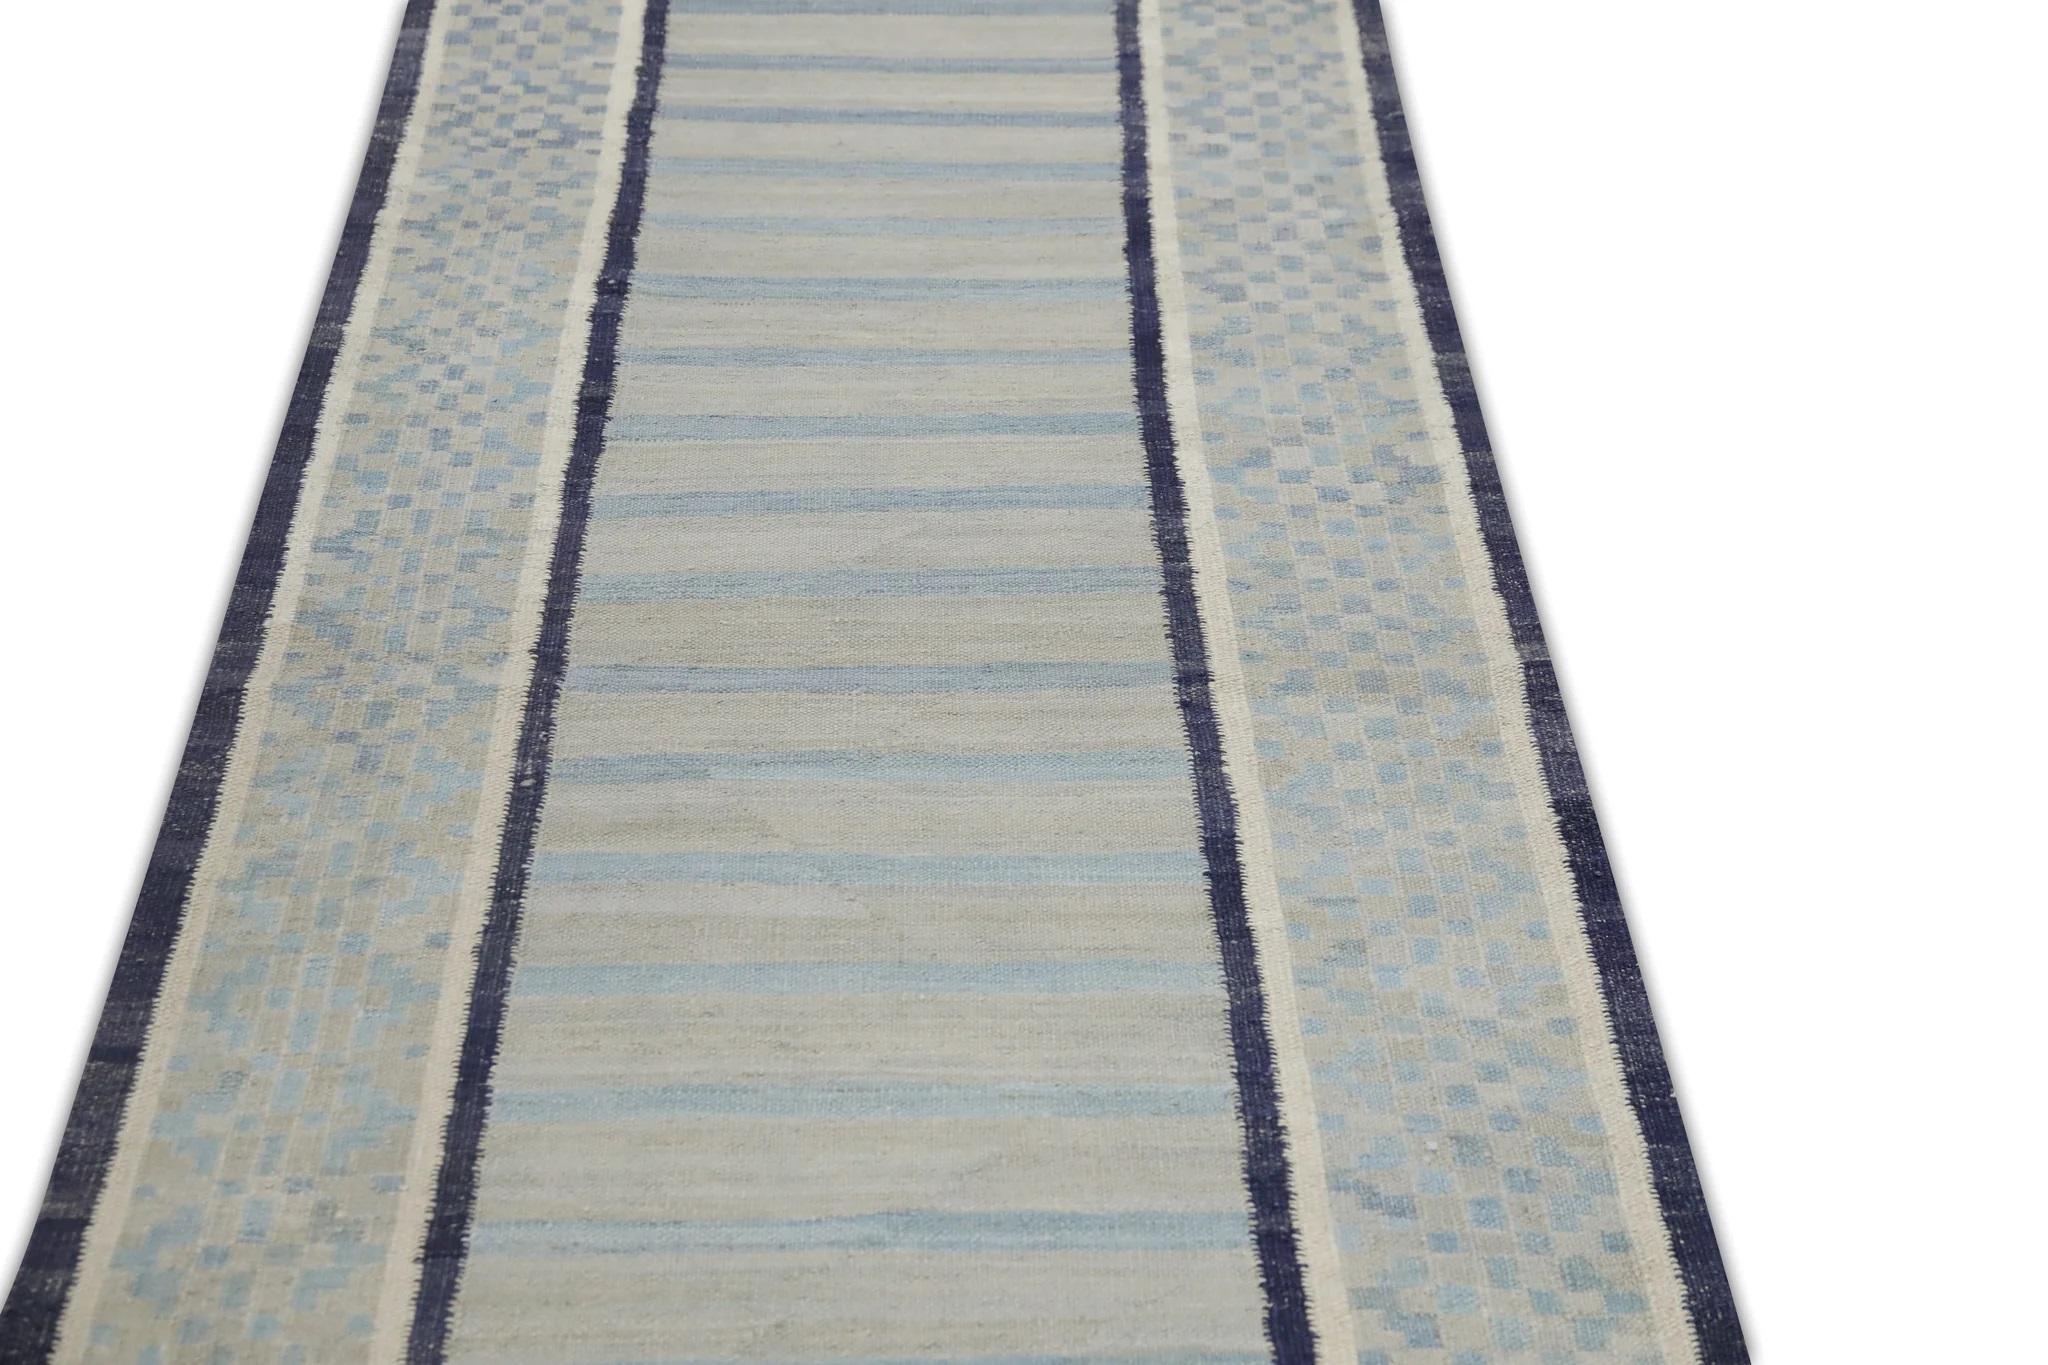 Flatweave Handmade Wool Runner in Blue Geometric Pattern 2'11